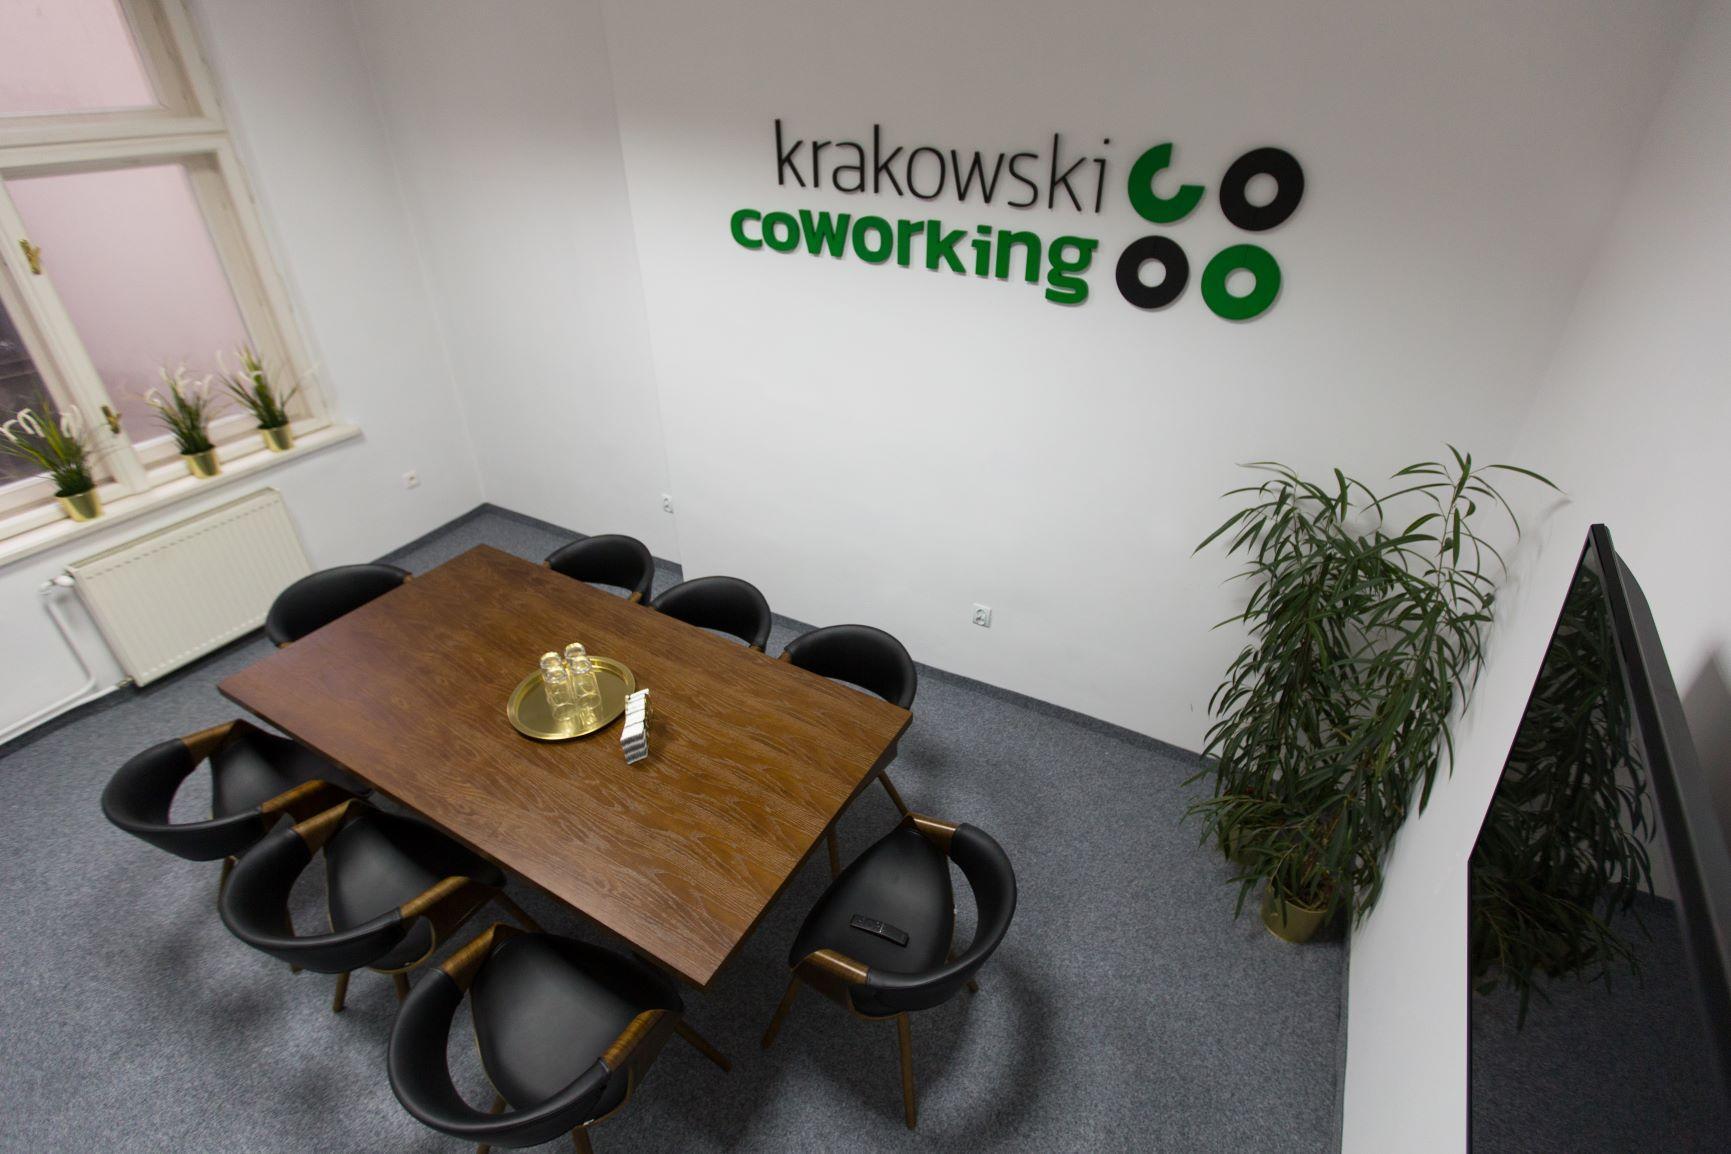 8 fős tárgyalóterem itt: Krakowski Coworking